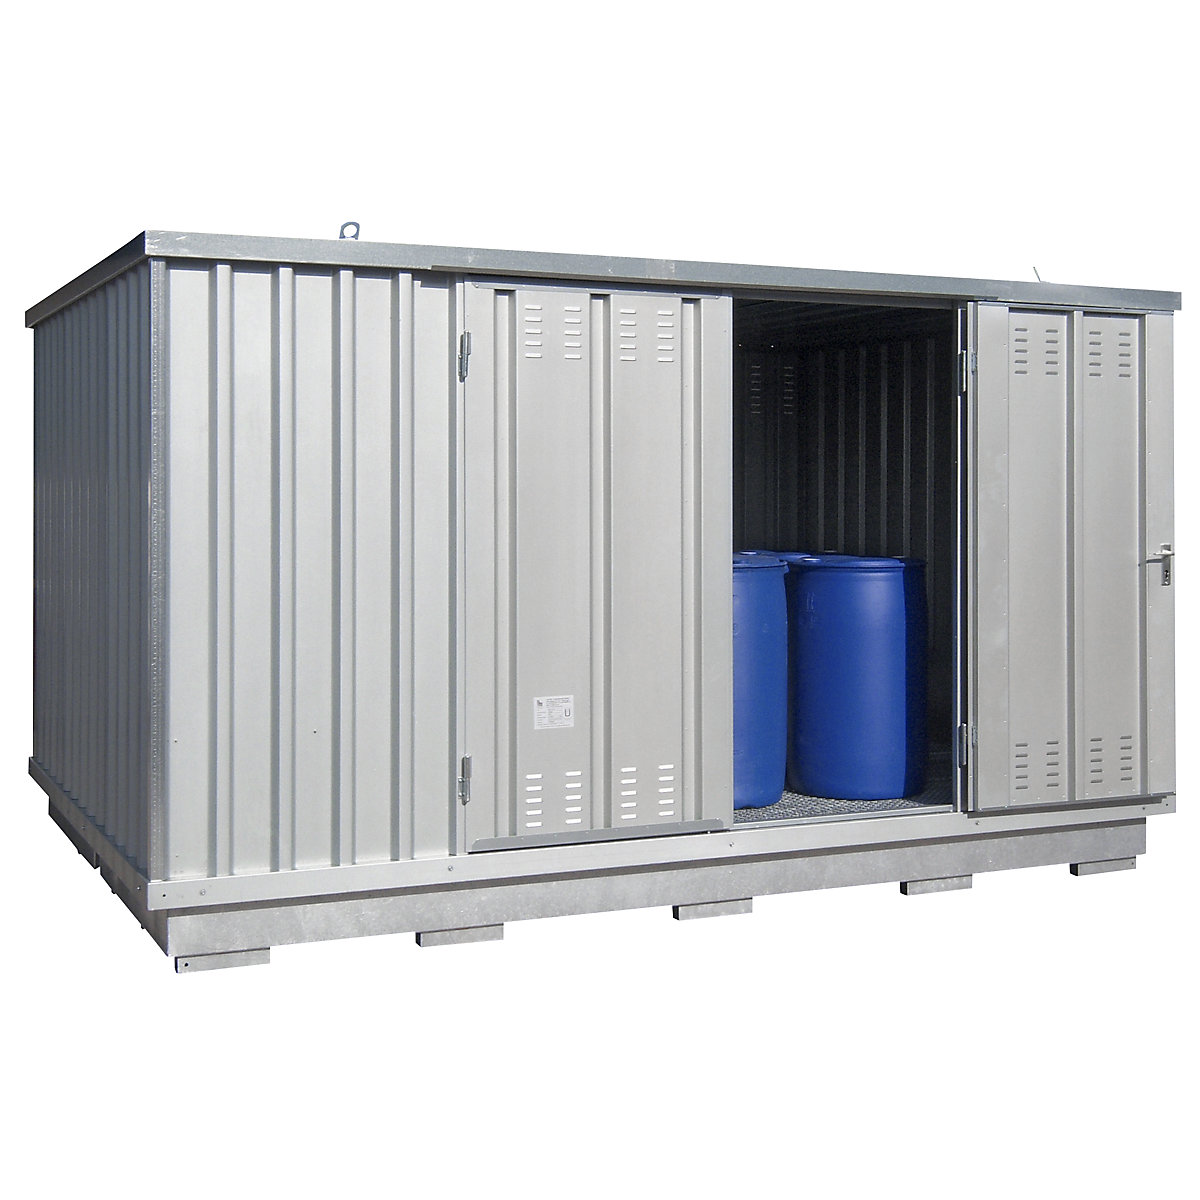 Gevaarlijke stoffen opslagcontainer voor waterverontreinigende vloeistoffen – LaCont